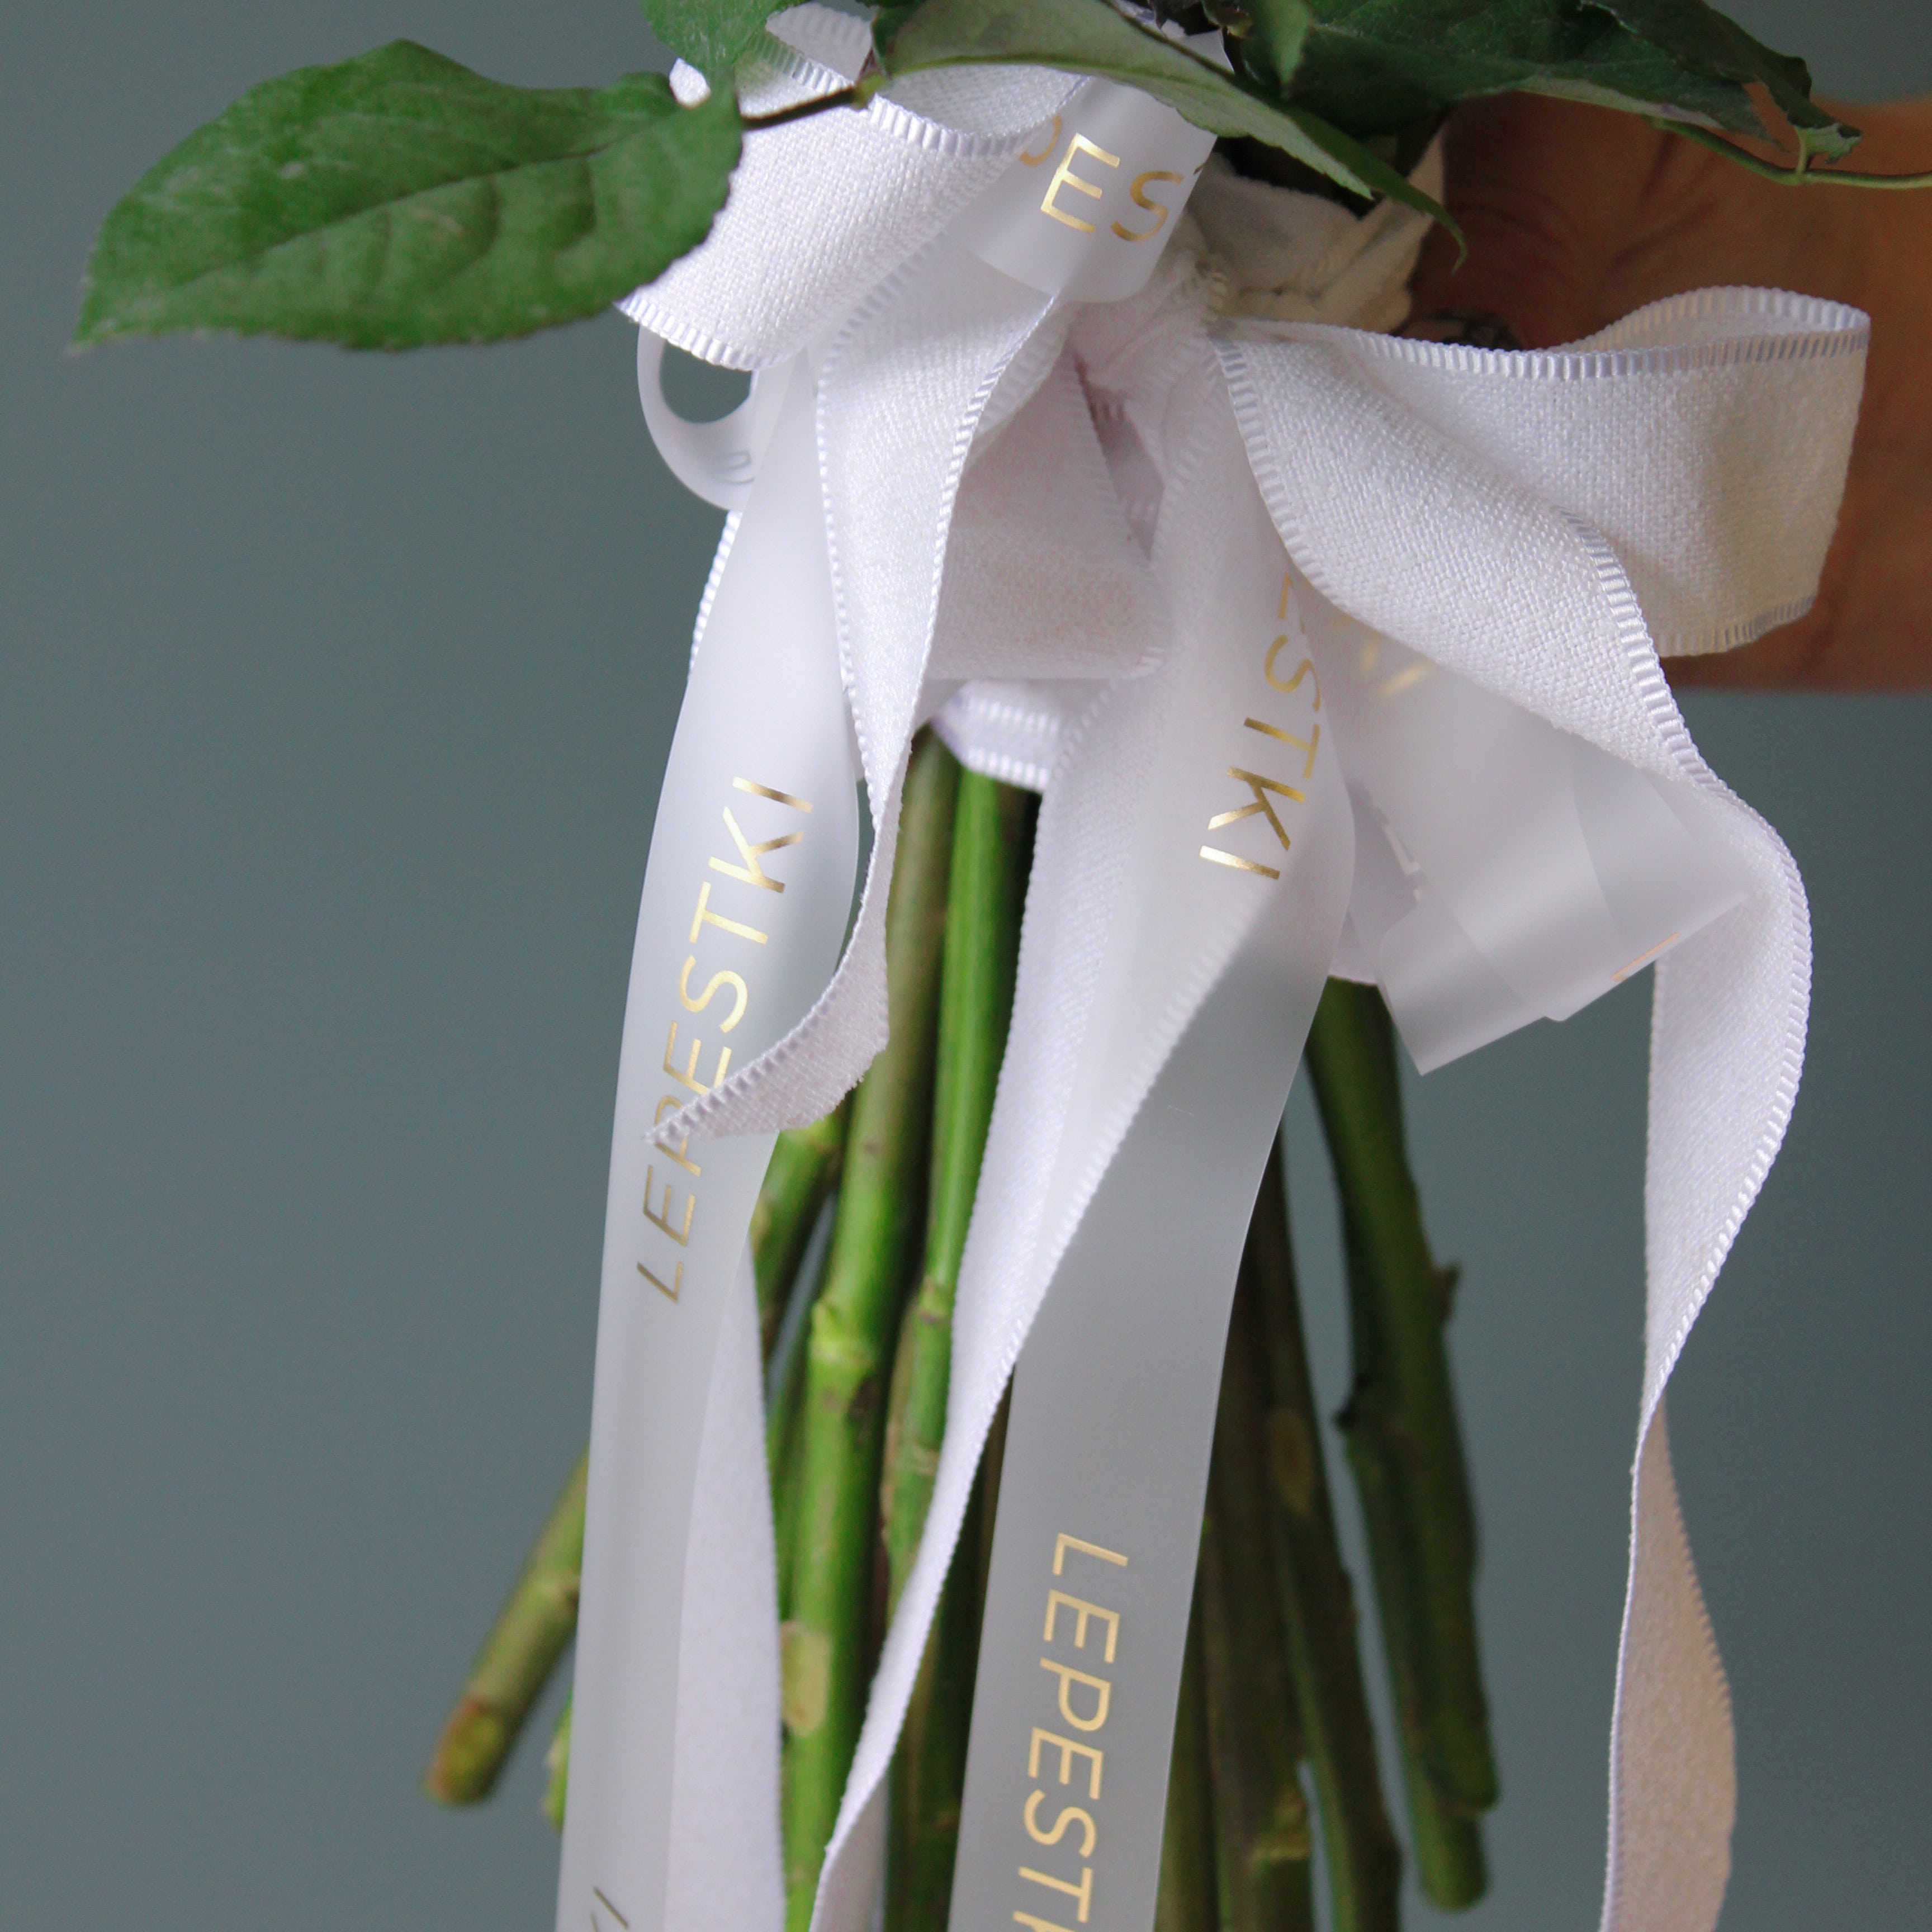 25 пионовидных роз  "White O'Hara" Эквадор